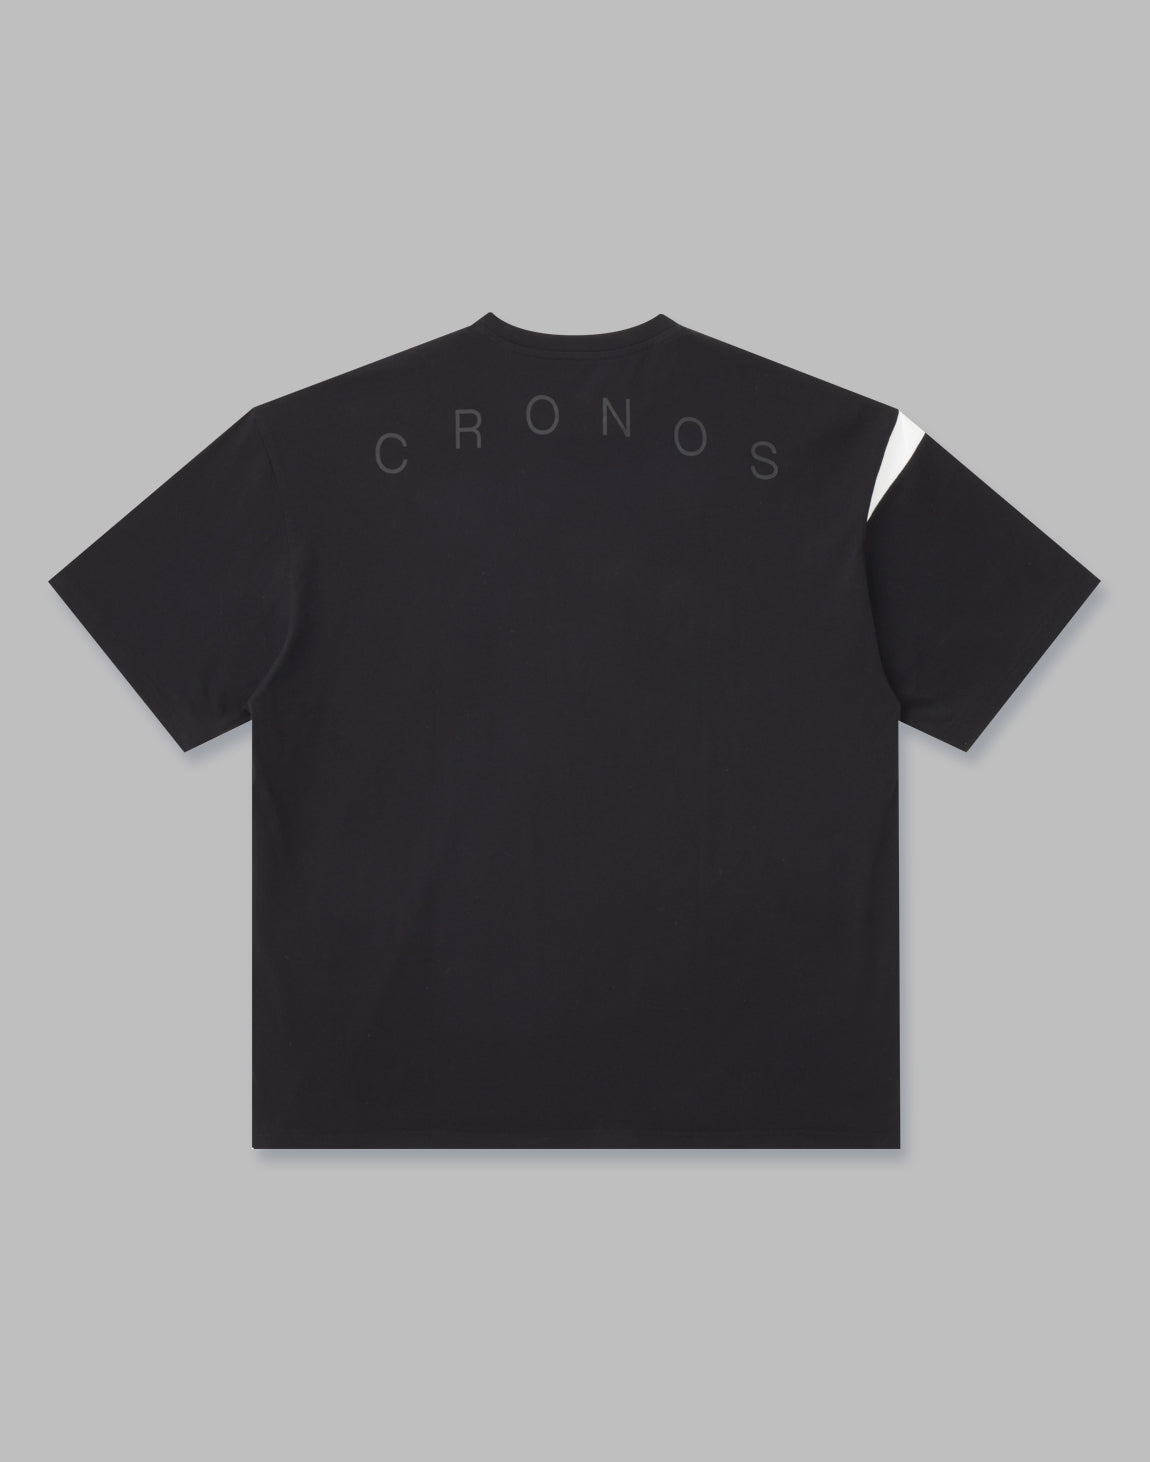 ★★CRONOS クロノスメンズ  ロンT  Lサイズ　黒 ブラック